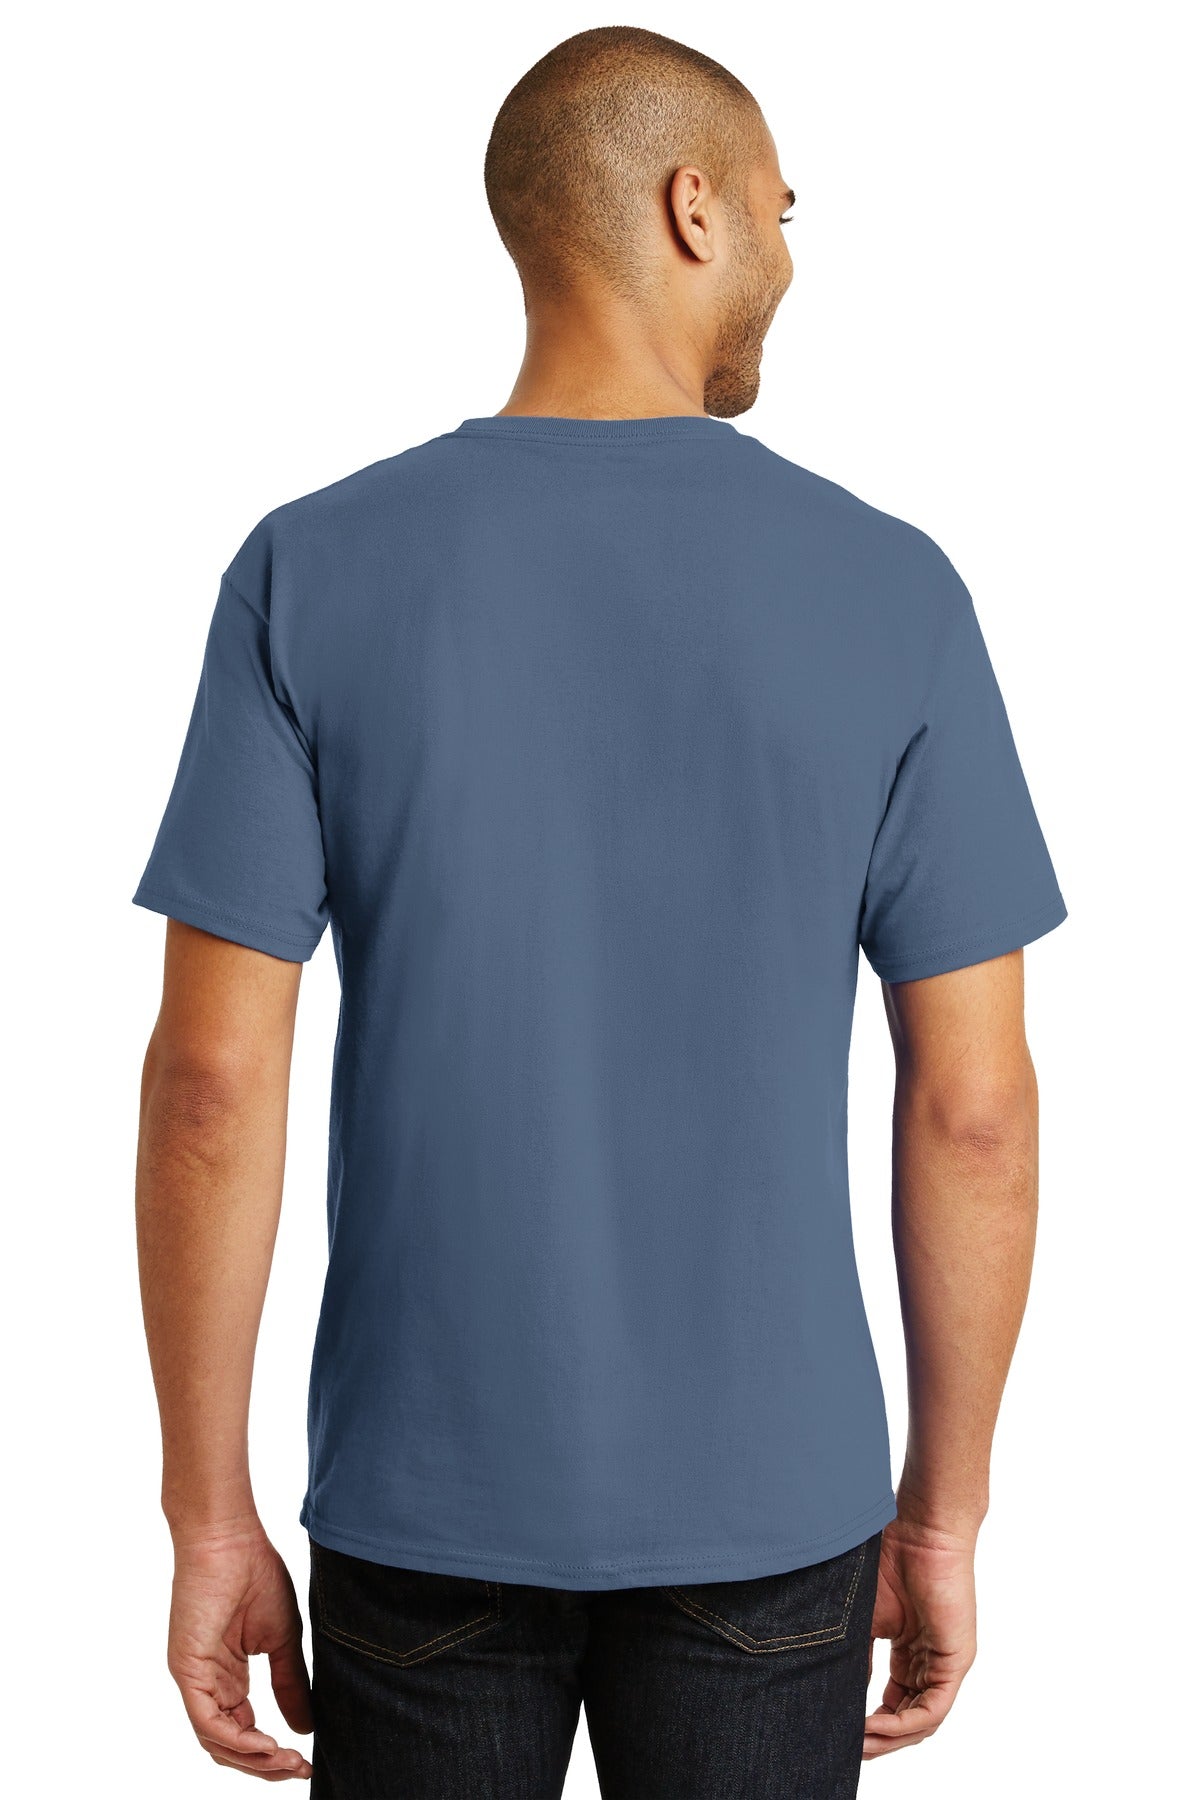 Hanes® - Authentic 100% Cotton T-Shirt. 5250 [Denim Blue] - DFW Impression